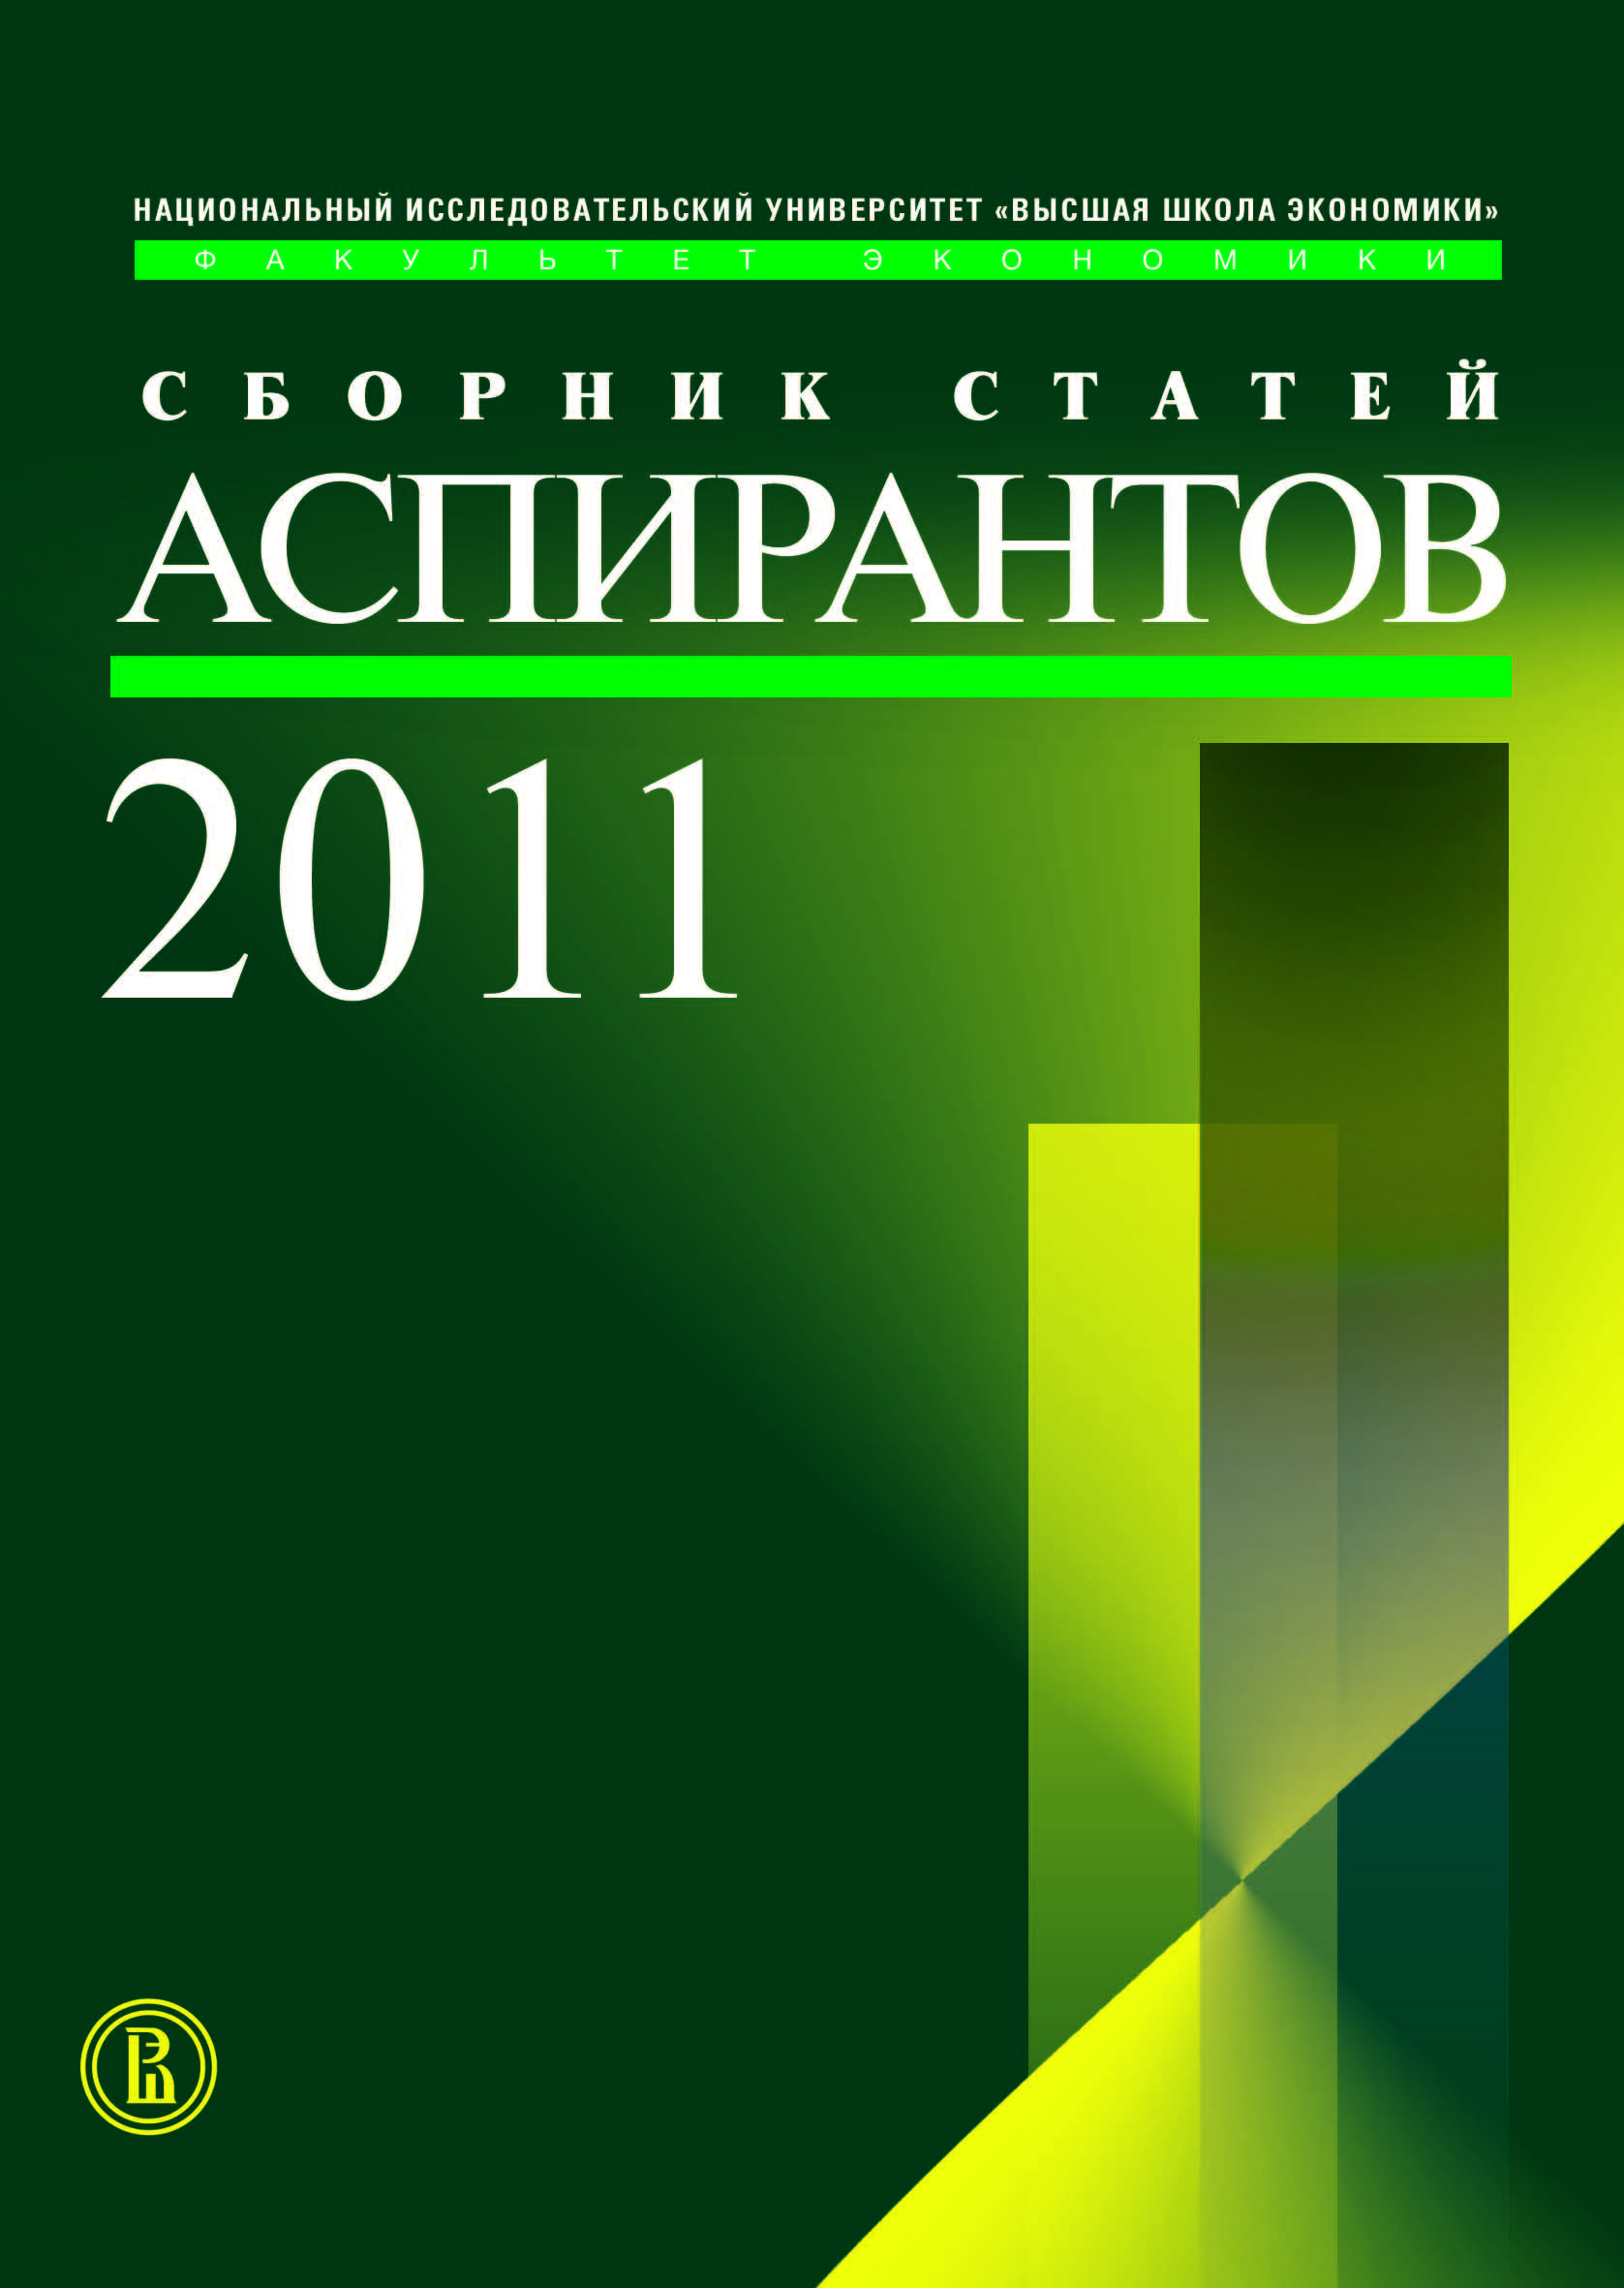 Сборник статей аспирантов - 2011. Факультет экономика